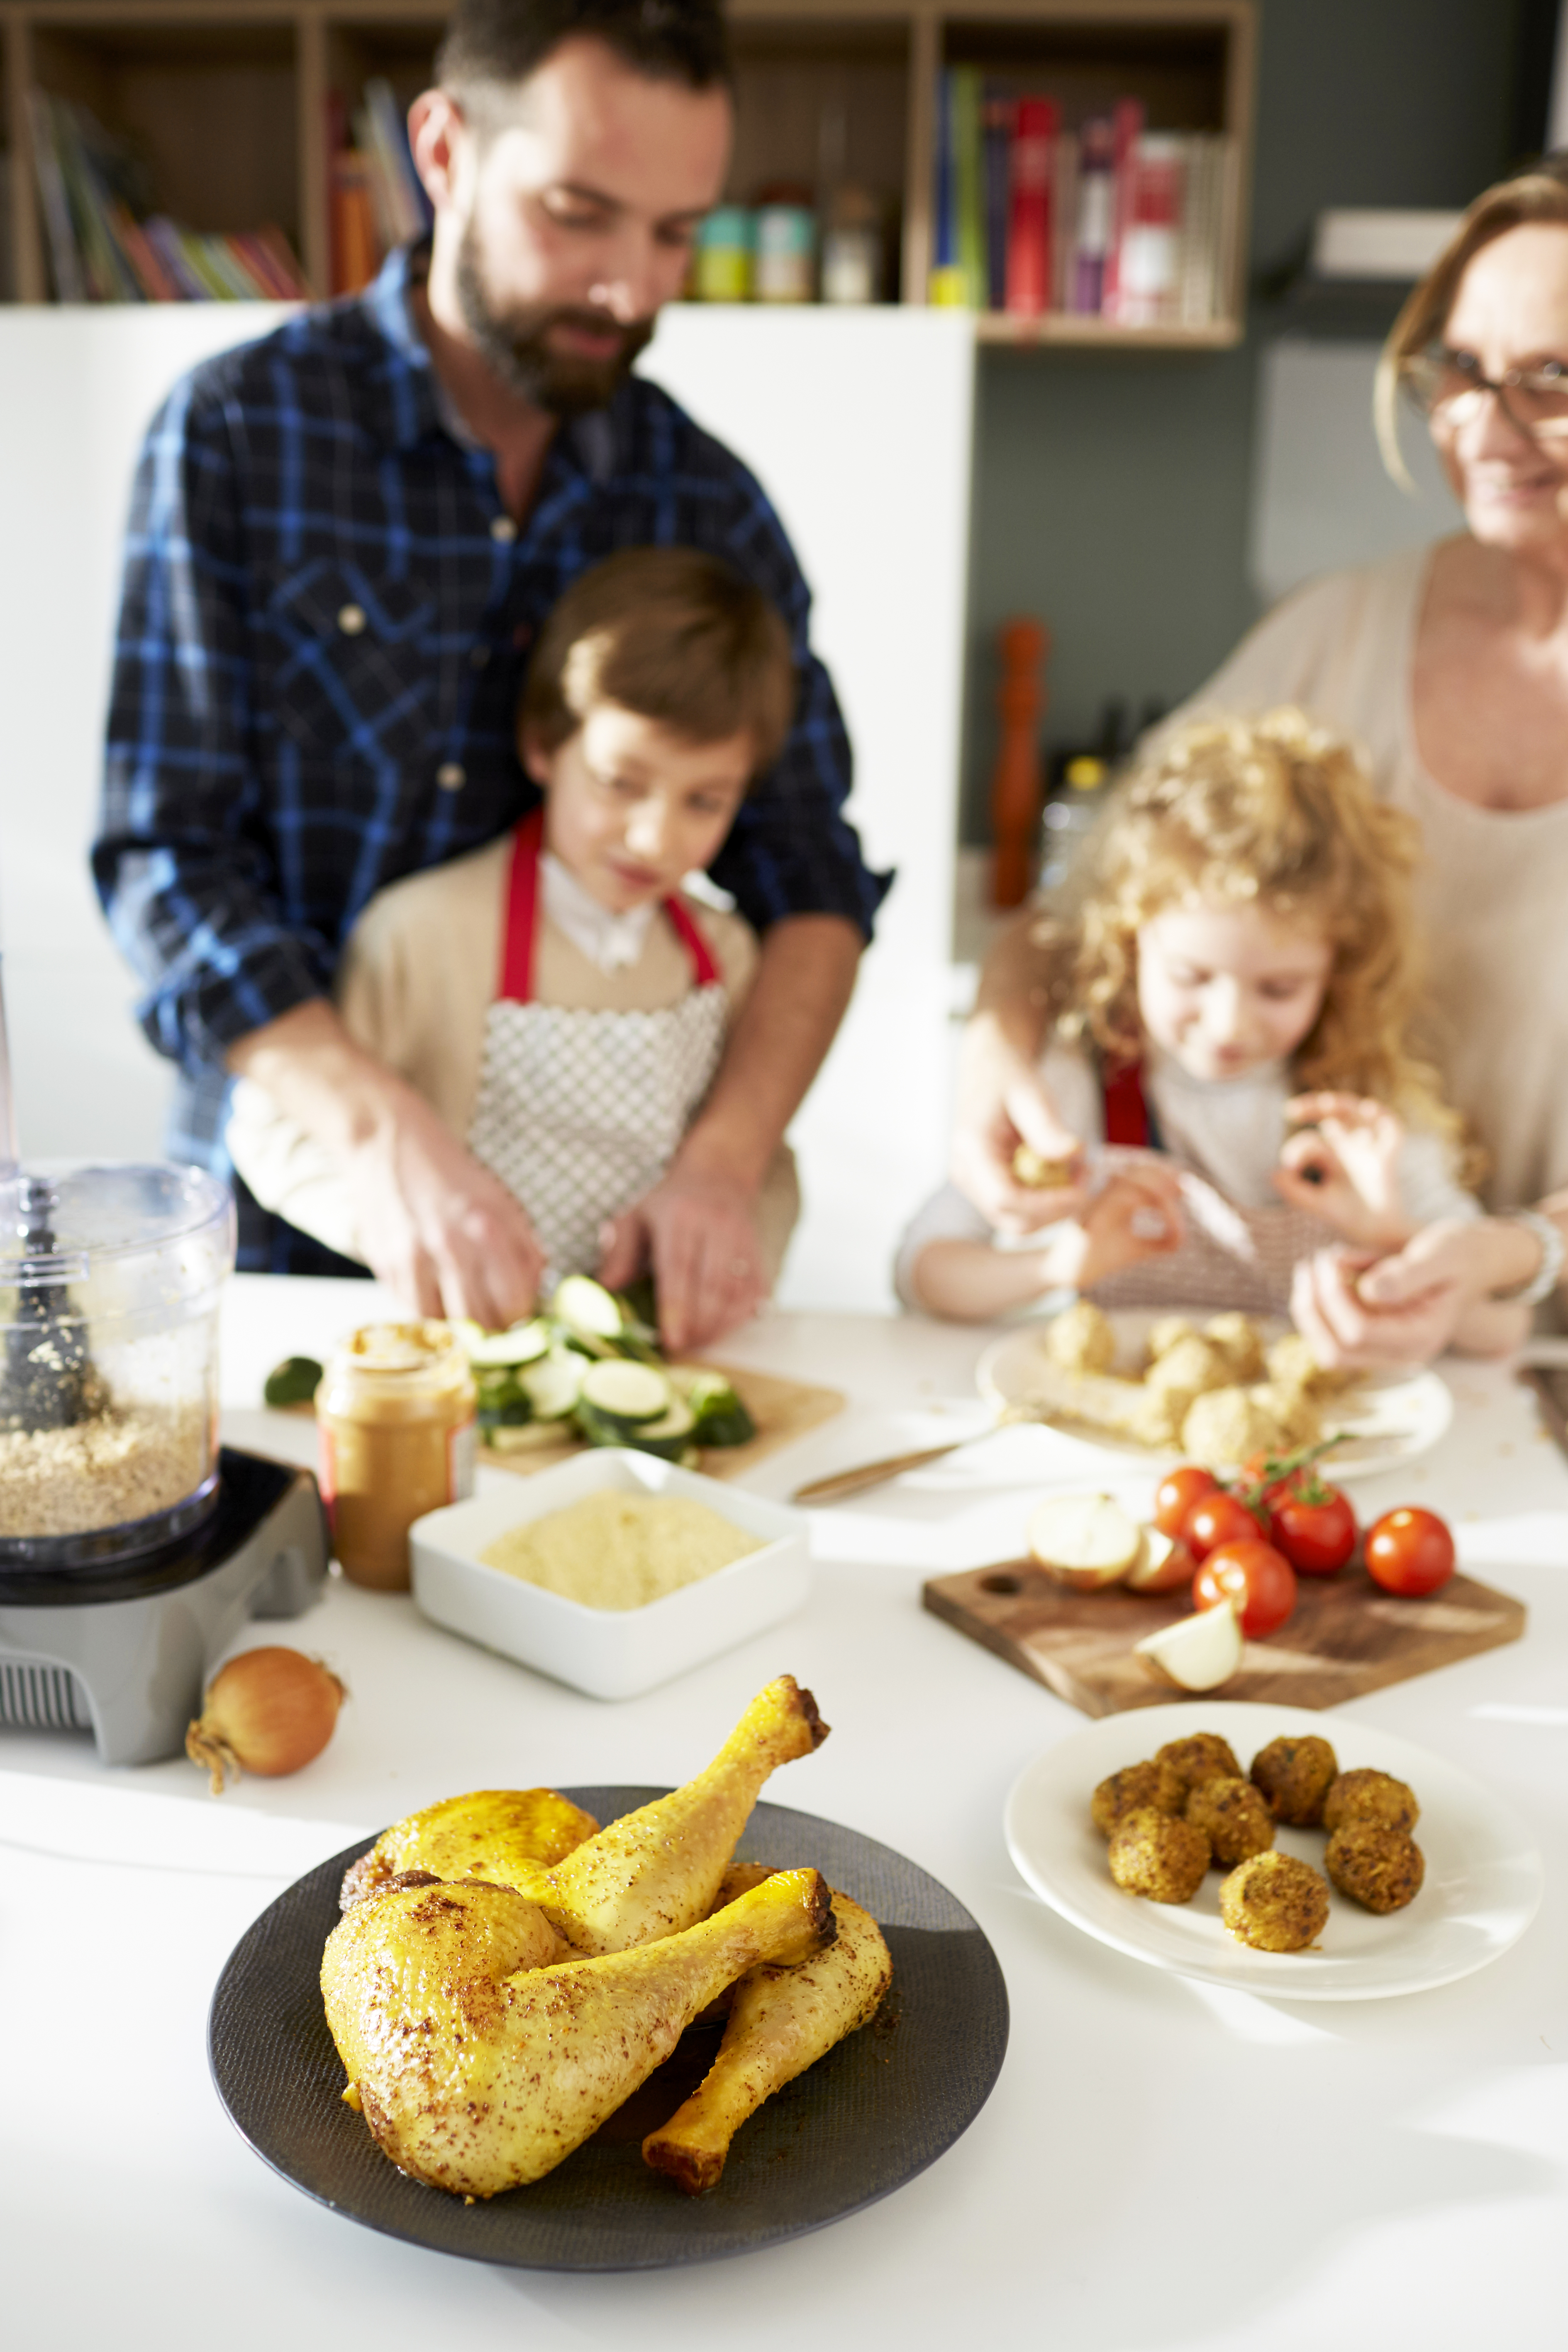 Faites la cuisine avec vos enfants pour les initier aux saveurs !